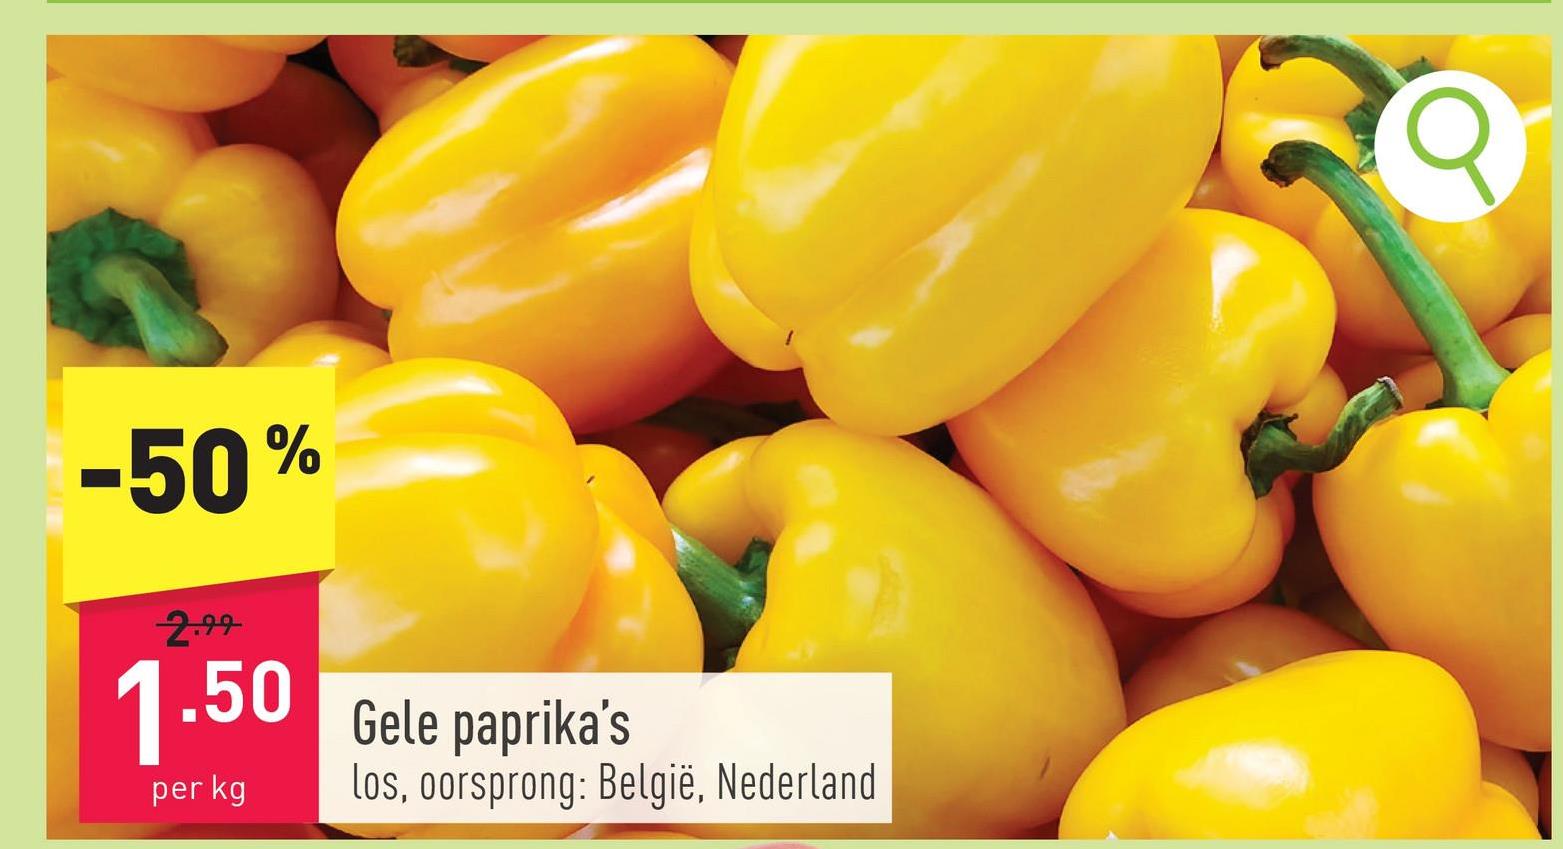 Gele paprika's los, oorsprong: België, Nederland